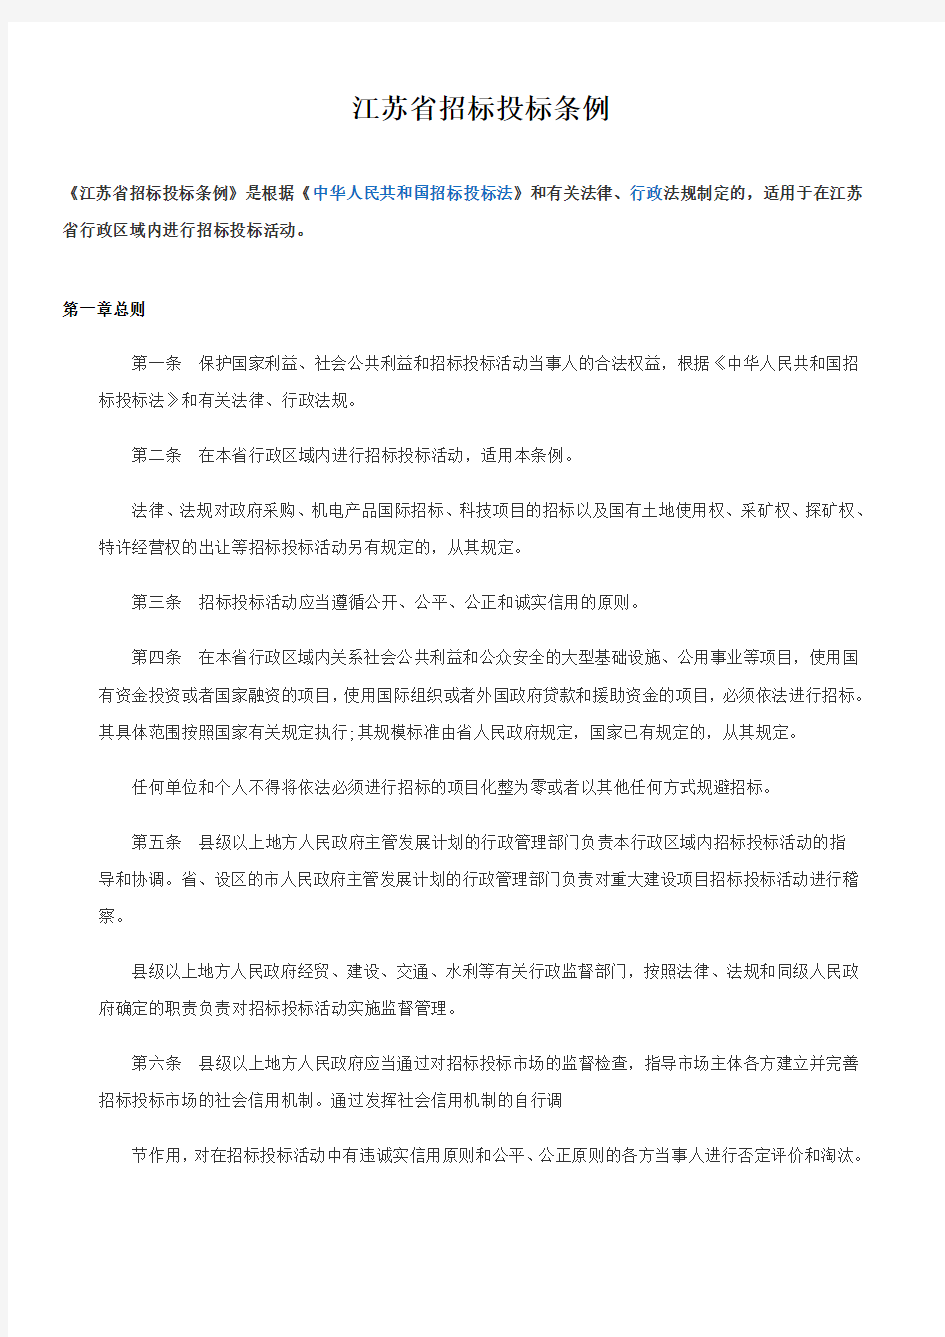 2013-江苏省招标投标条例